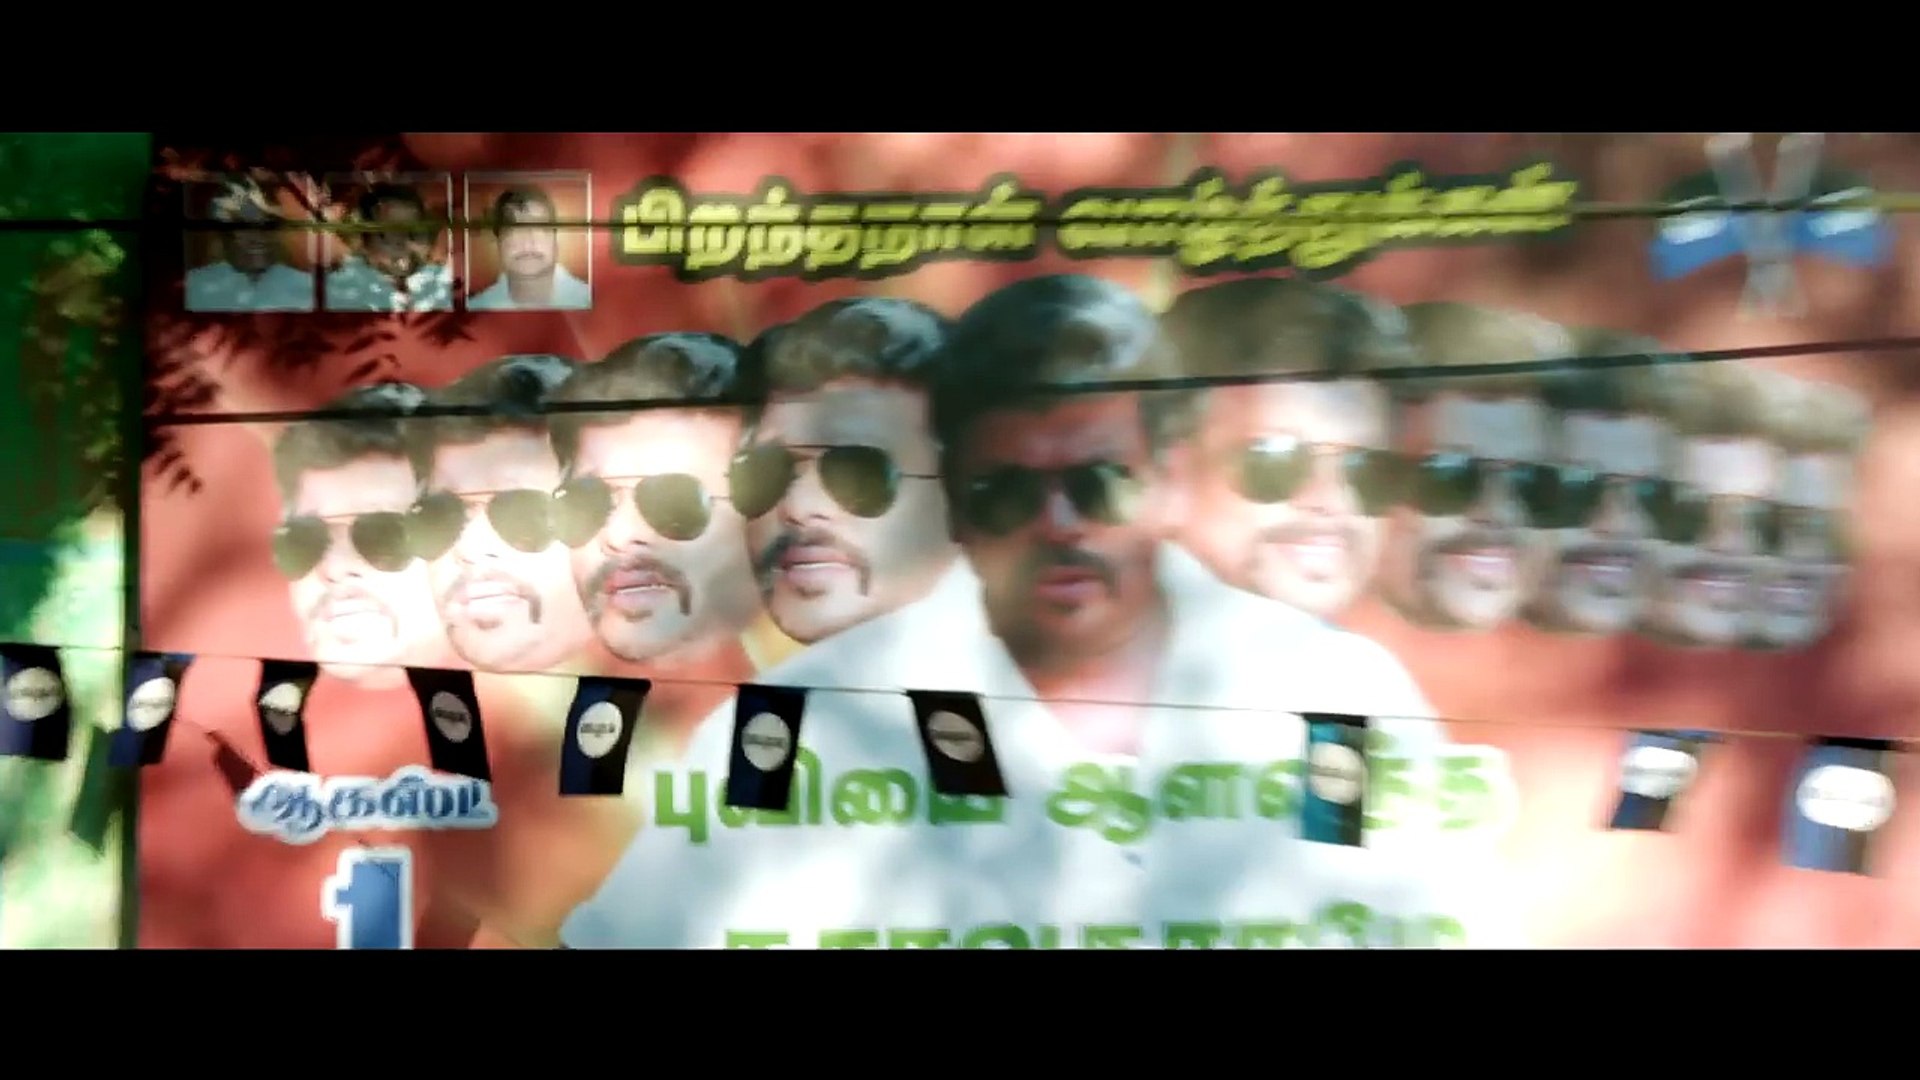 PaPa PaPa Video Song - Bairavaa Video Songs - Vijay, Keerthy Suresh -  Santhosh Narayanan - video Dailymotion